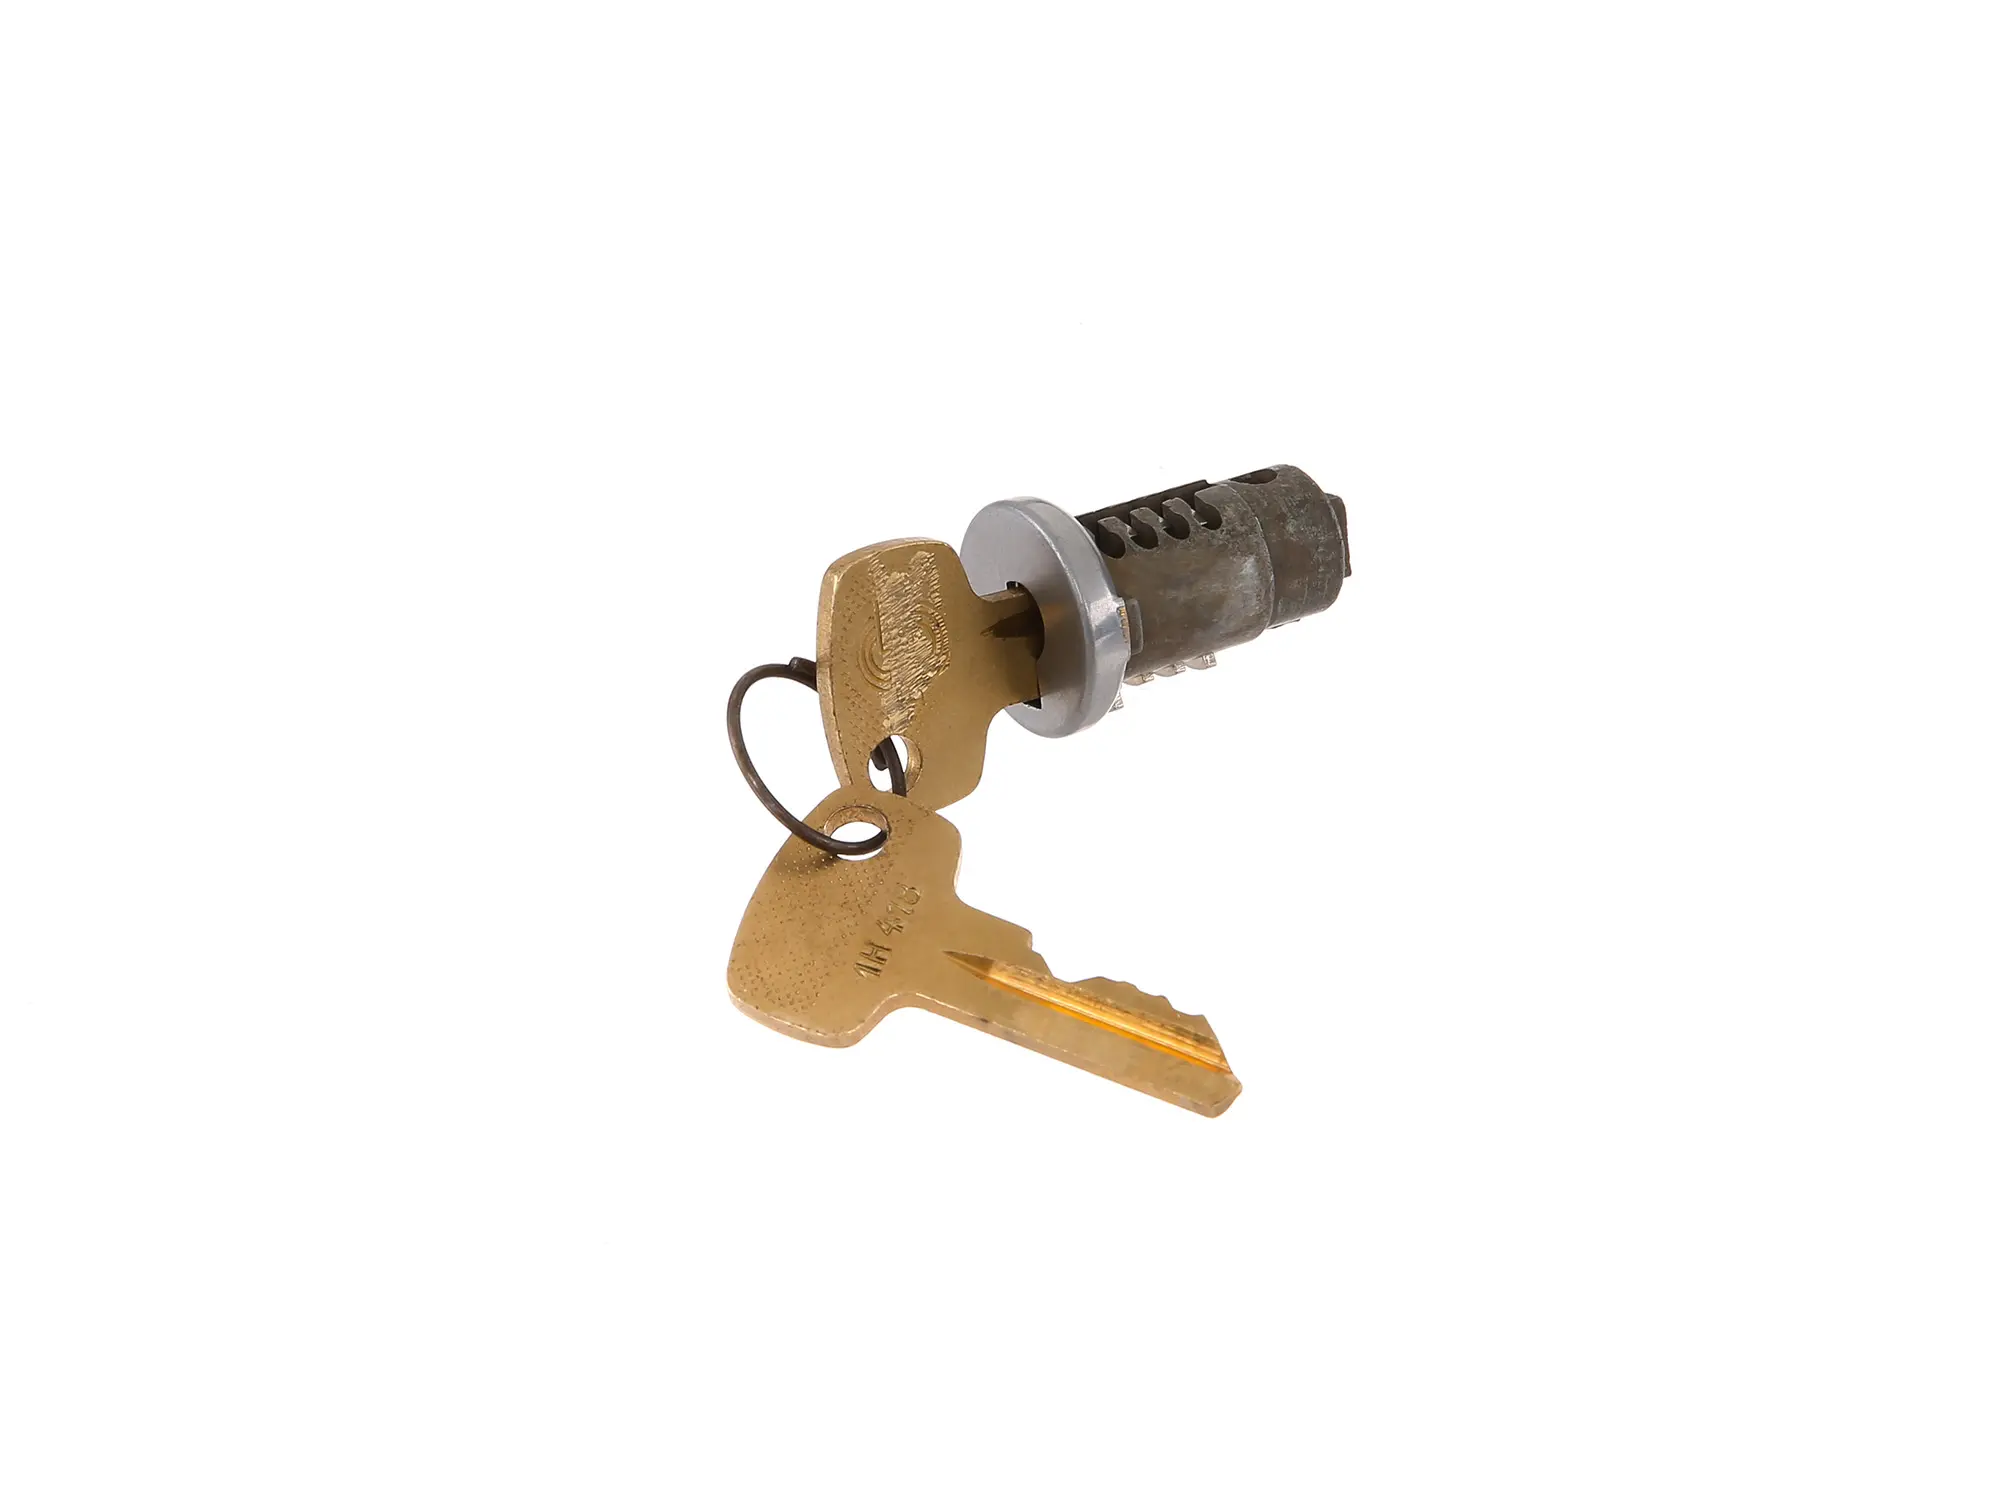 Schließzylinder mit 2 Schlüssel für Werkzeugkastenschloss - Simson S51, S53, S83, SR50, SR80, Art.-Nr.: 10064213 - Bild 1